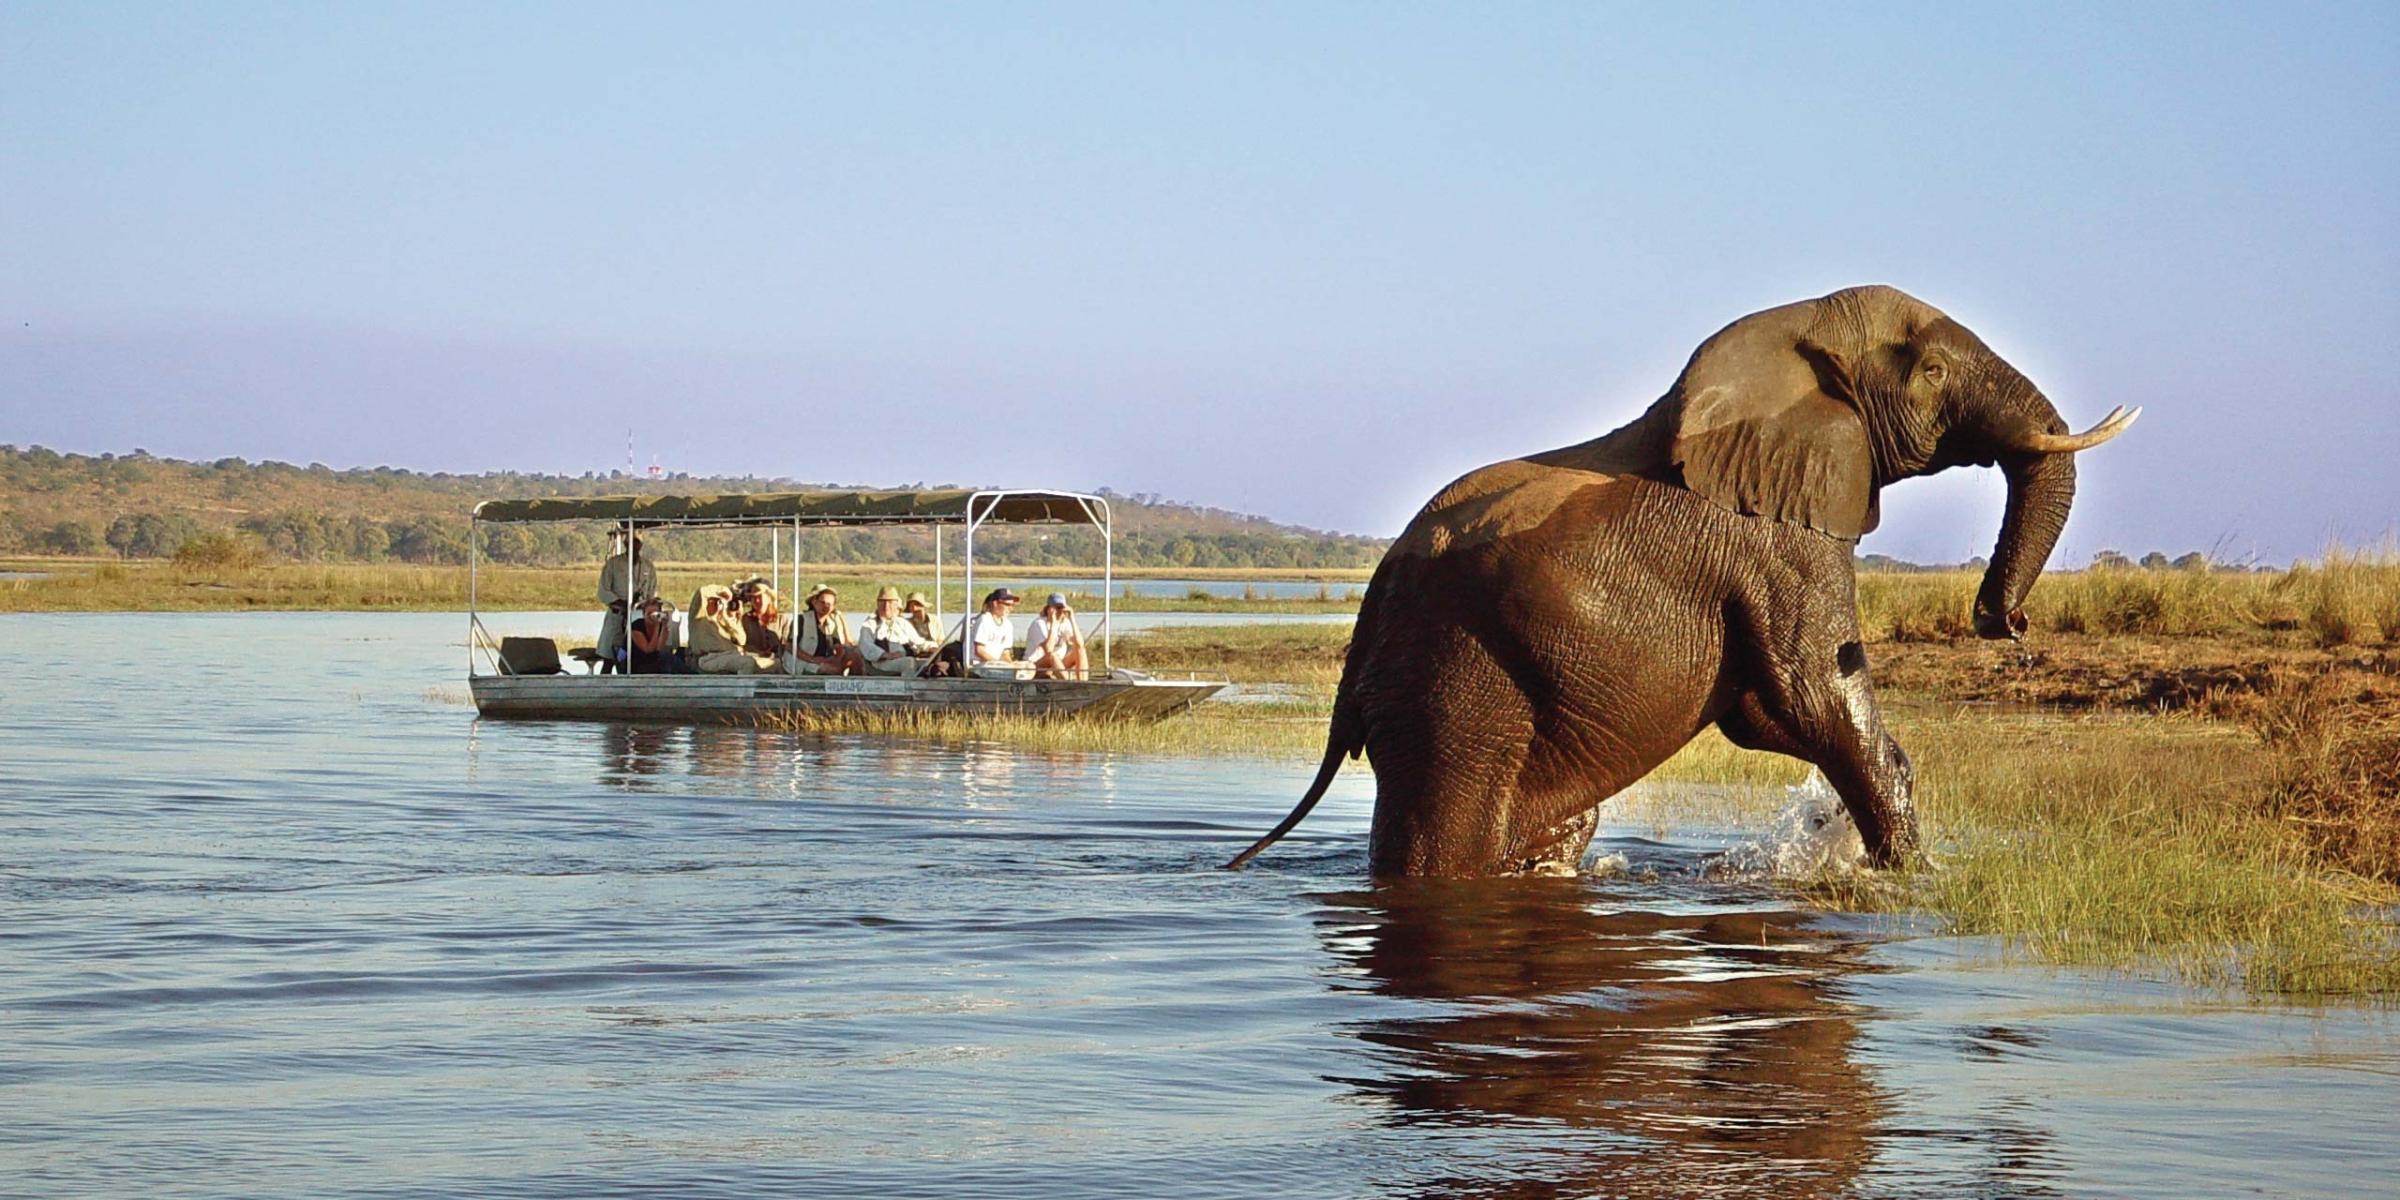 Bootsfahrt auf dem Chobe River - Badender Elefant im Wasser